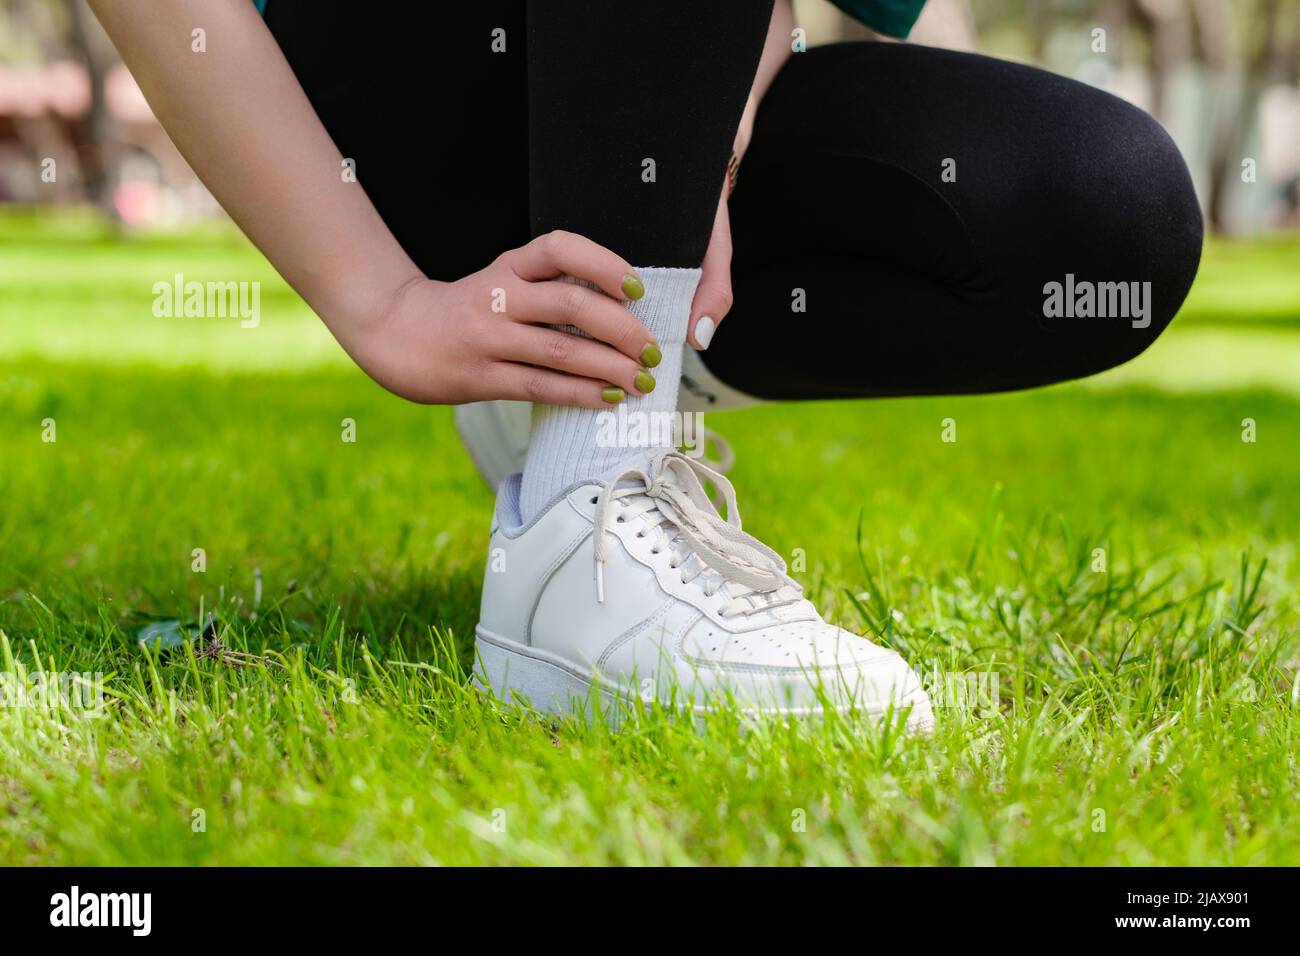 Vista ravvicinata della giovane donna che indossa leggings neri affetti da una lesione alla caviglia durante l'esercizio e la corsa. Concetto di salute e sport. Foto Stock